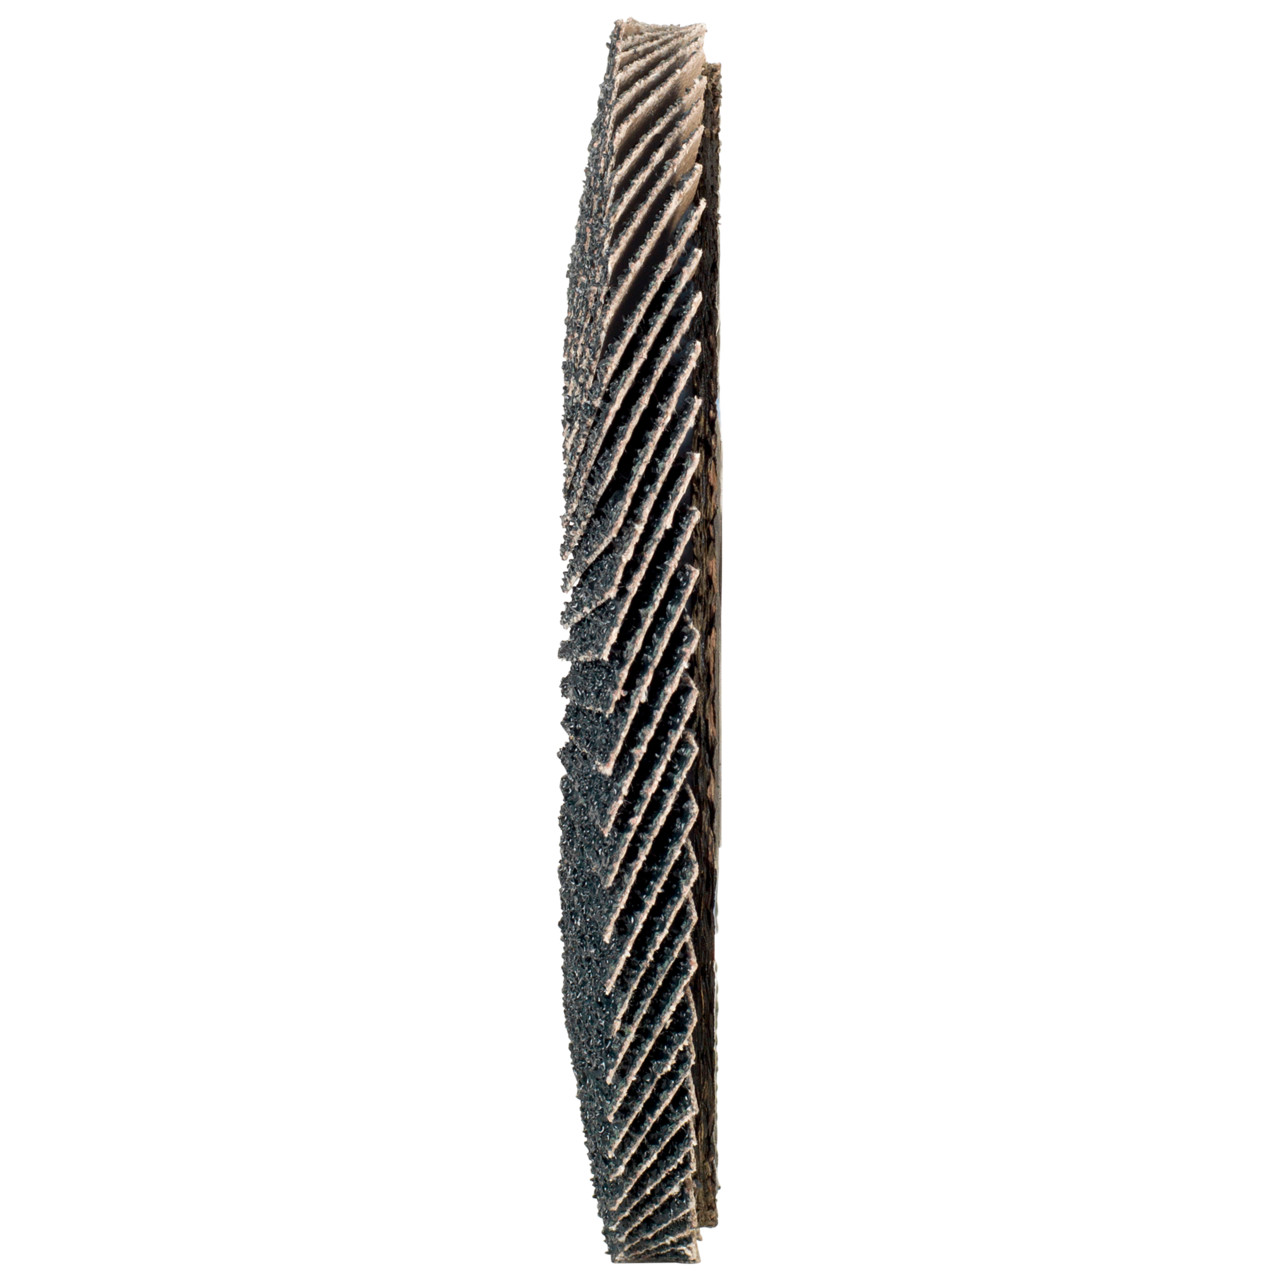 Tyrolit Arandela dentada DxH 150x22,2 2en1 para acero y acero inoxidable, P60, forma: 27A - versión desplazada (versión con cuerpo de soporte de fibra de vidrio), Art. 519213